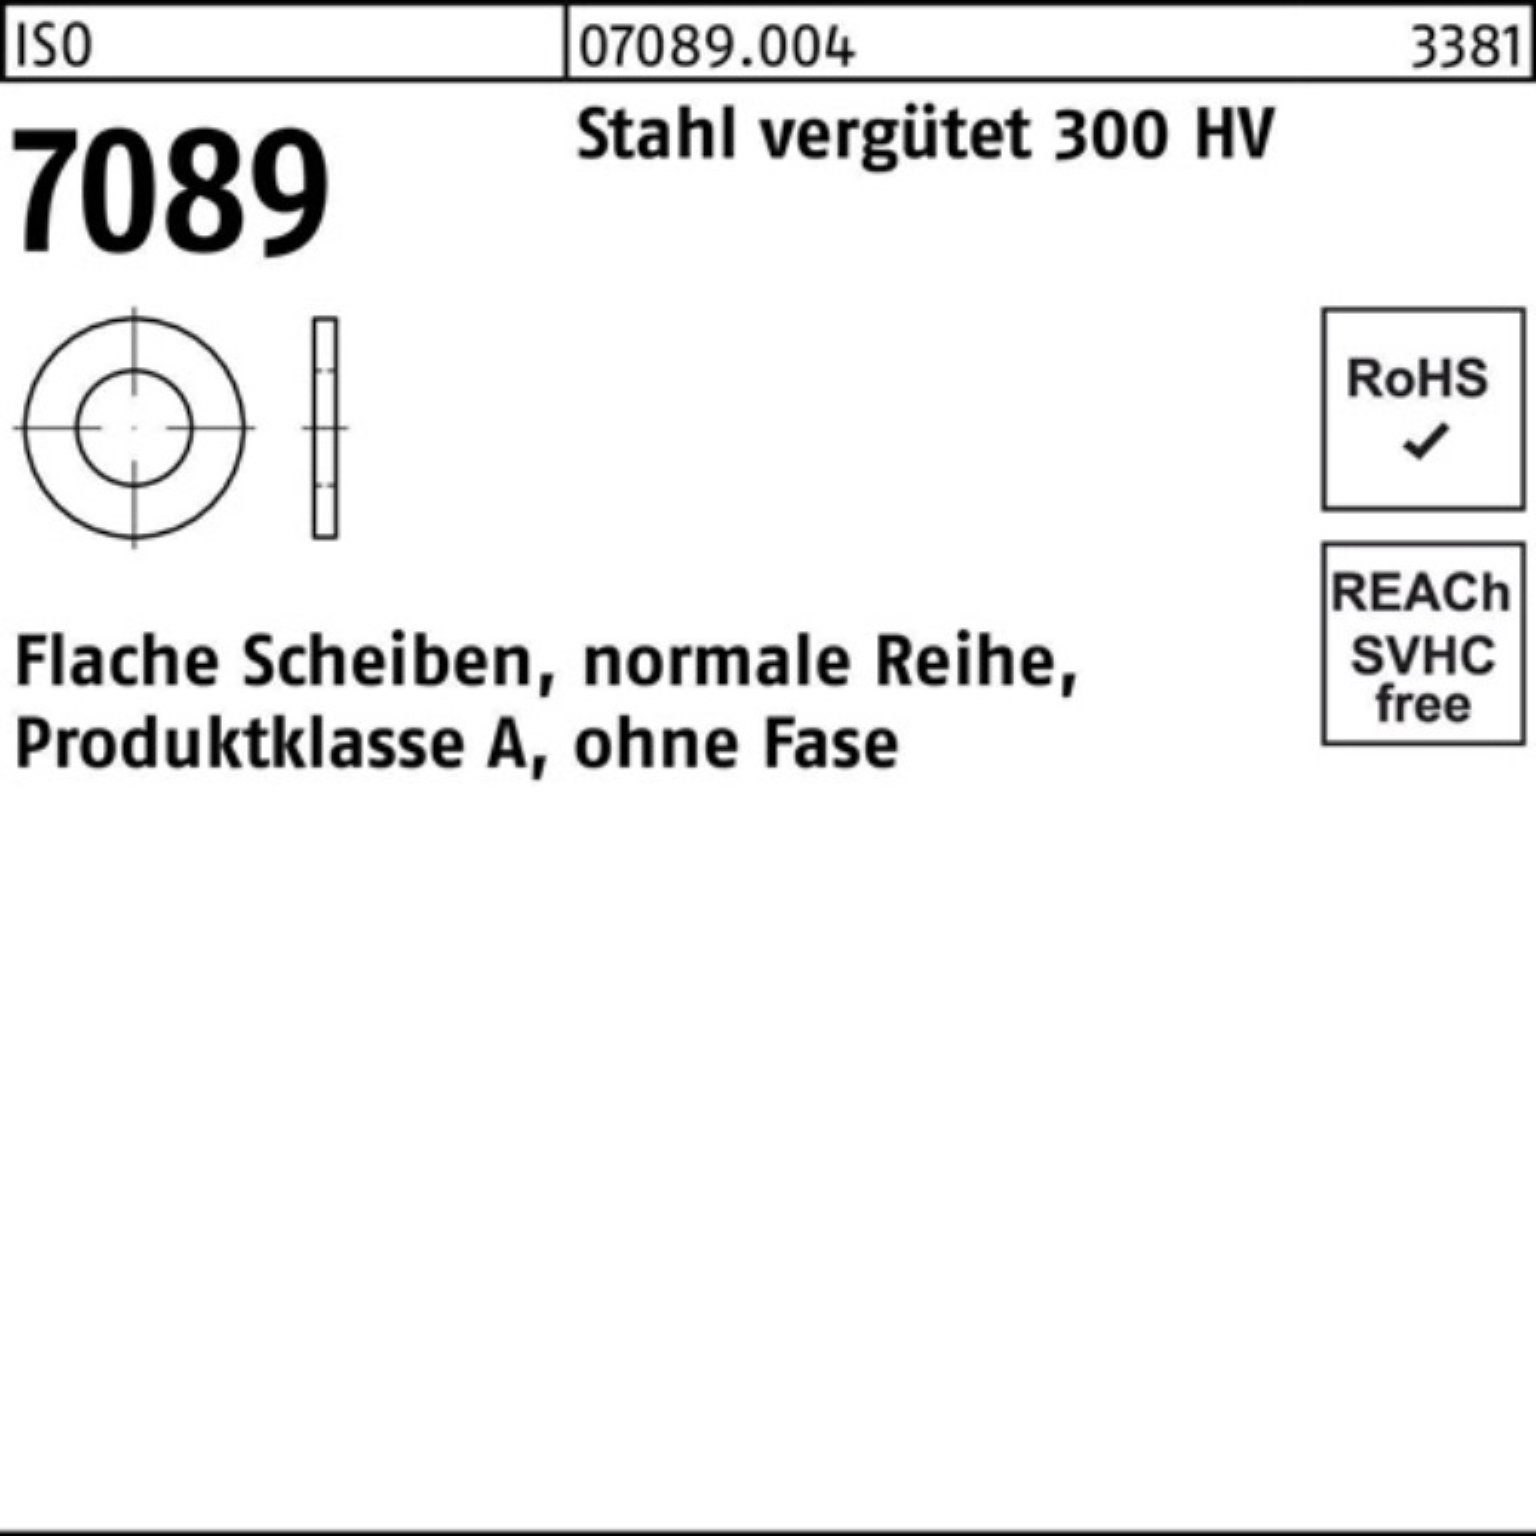 Bufab Unterlegscheibe 100er Pack Unterlegscheibe ISO 7089 o.Fase 20 Stahl vergütet 300 HV 1